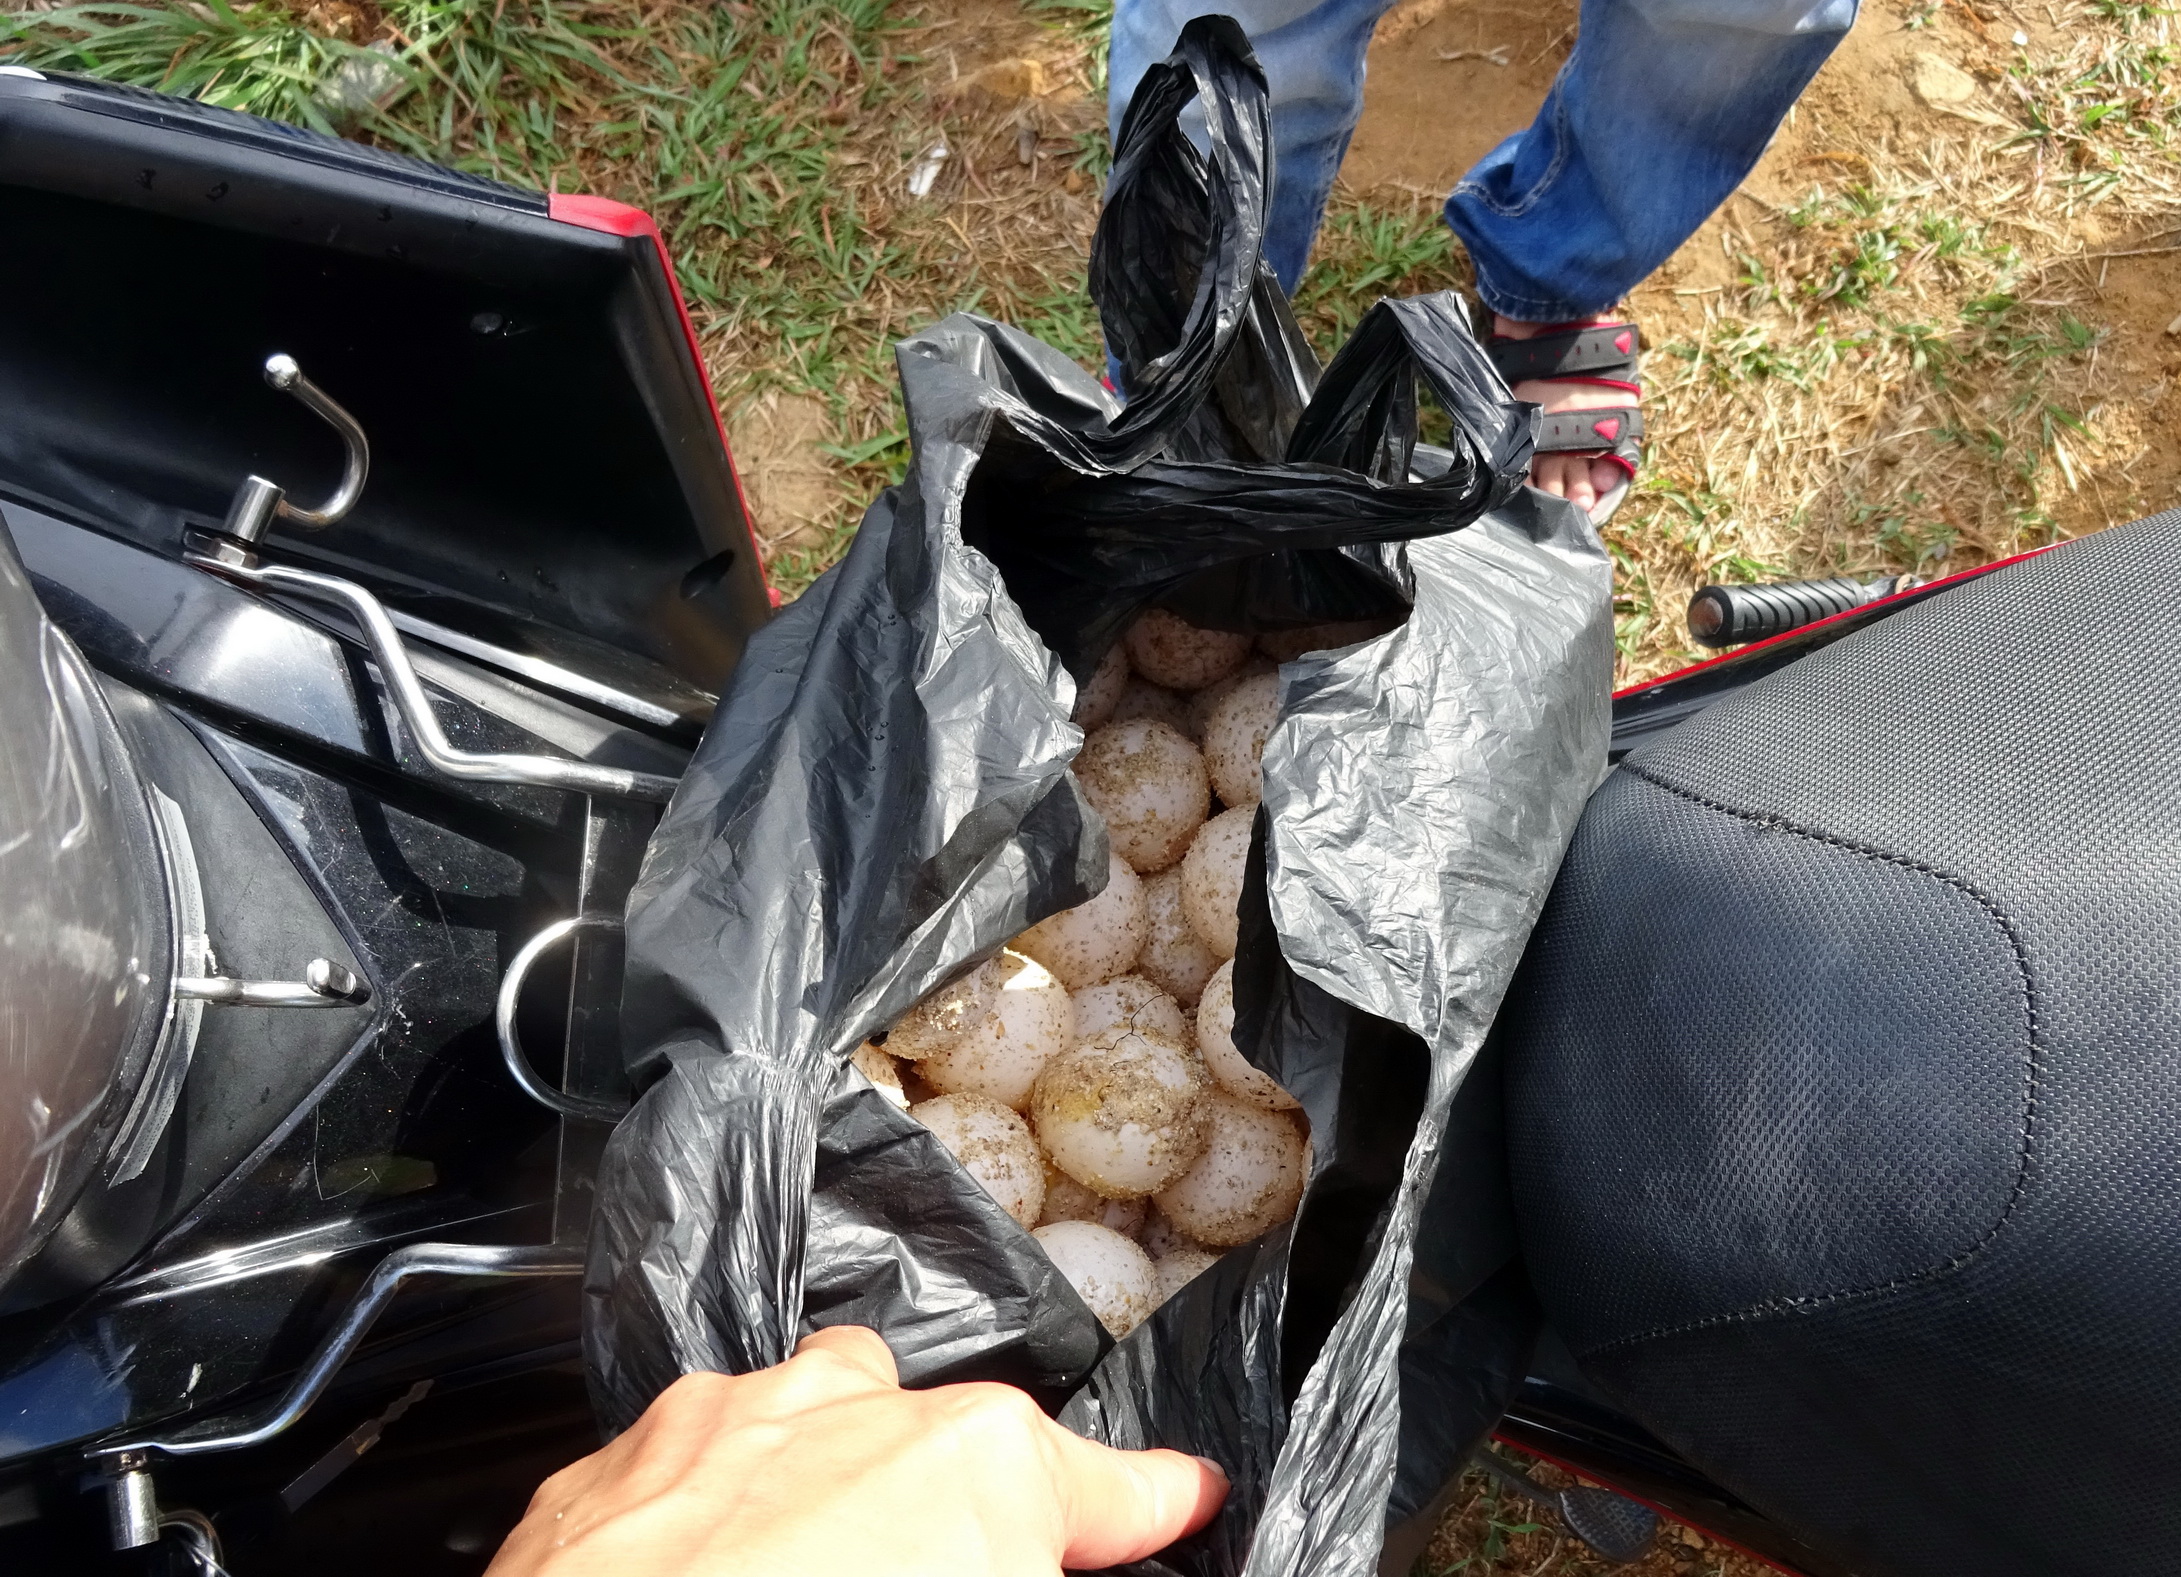 116 quả trứng vích do Tân lấy trộm để trên xe máy - Ảnh do hạt kiểm lâm Vườn quốc gia Côn Đảo cung cấp